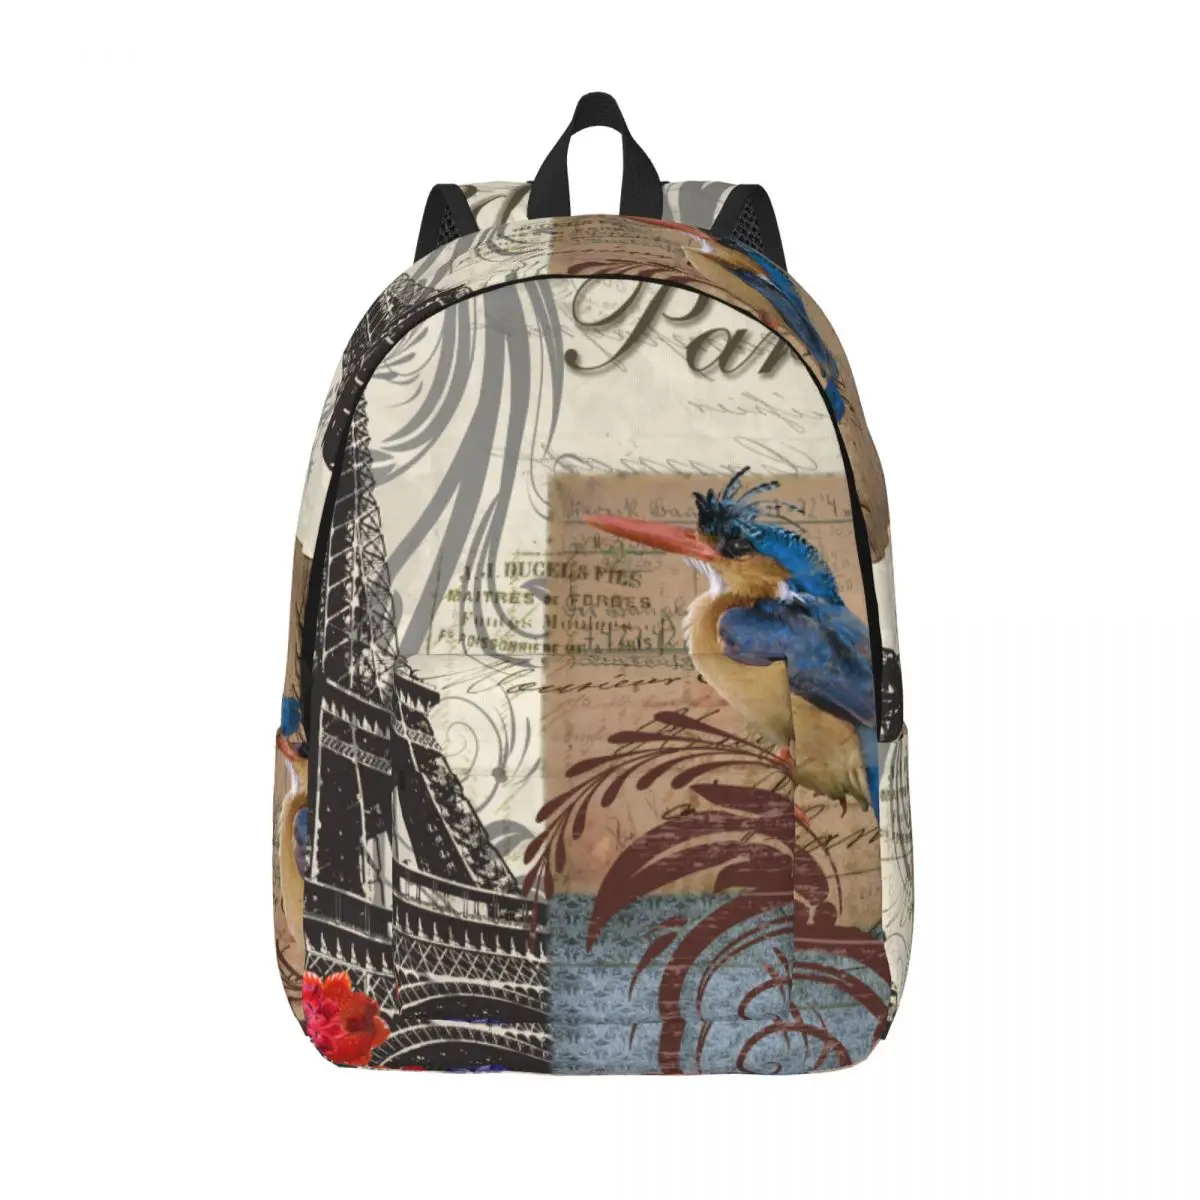 

Школьный ранец, студенческий рюкзак с Парижем, птицей и Эйфелевой башней, наплечный рюкзак, сумка для ноутбука, школьный рюкзак